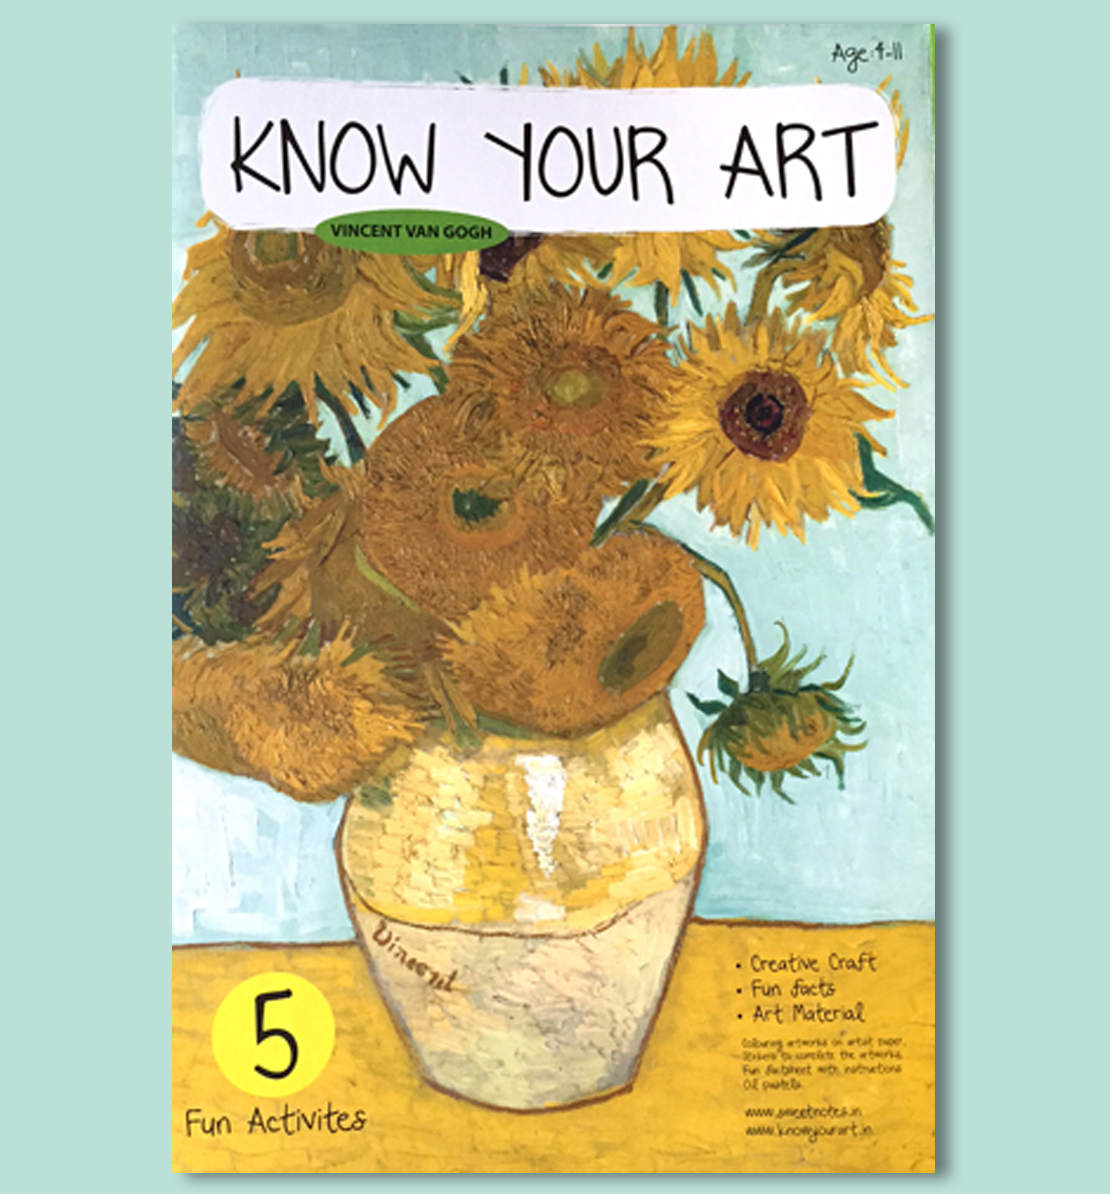 Know Your Art - DIY Kit - Vincent Van Gogh